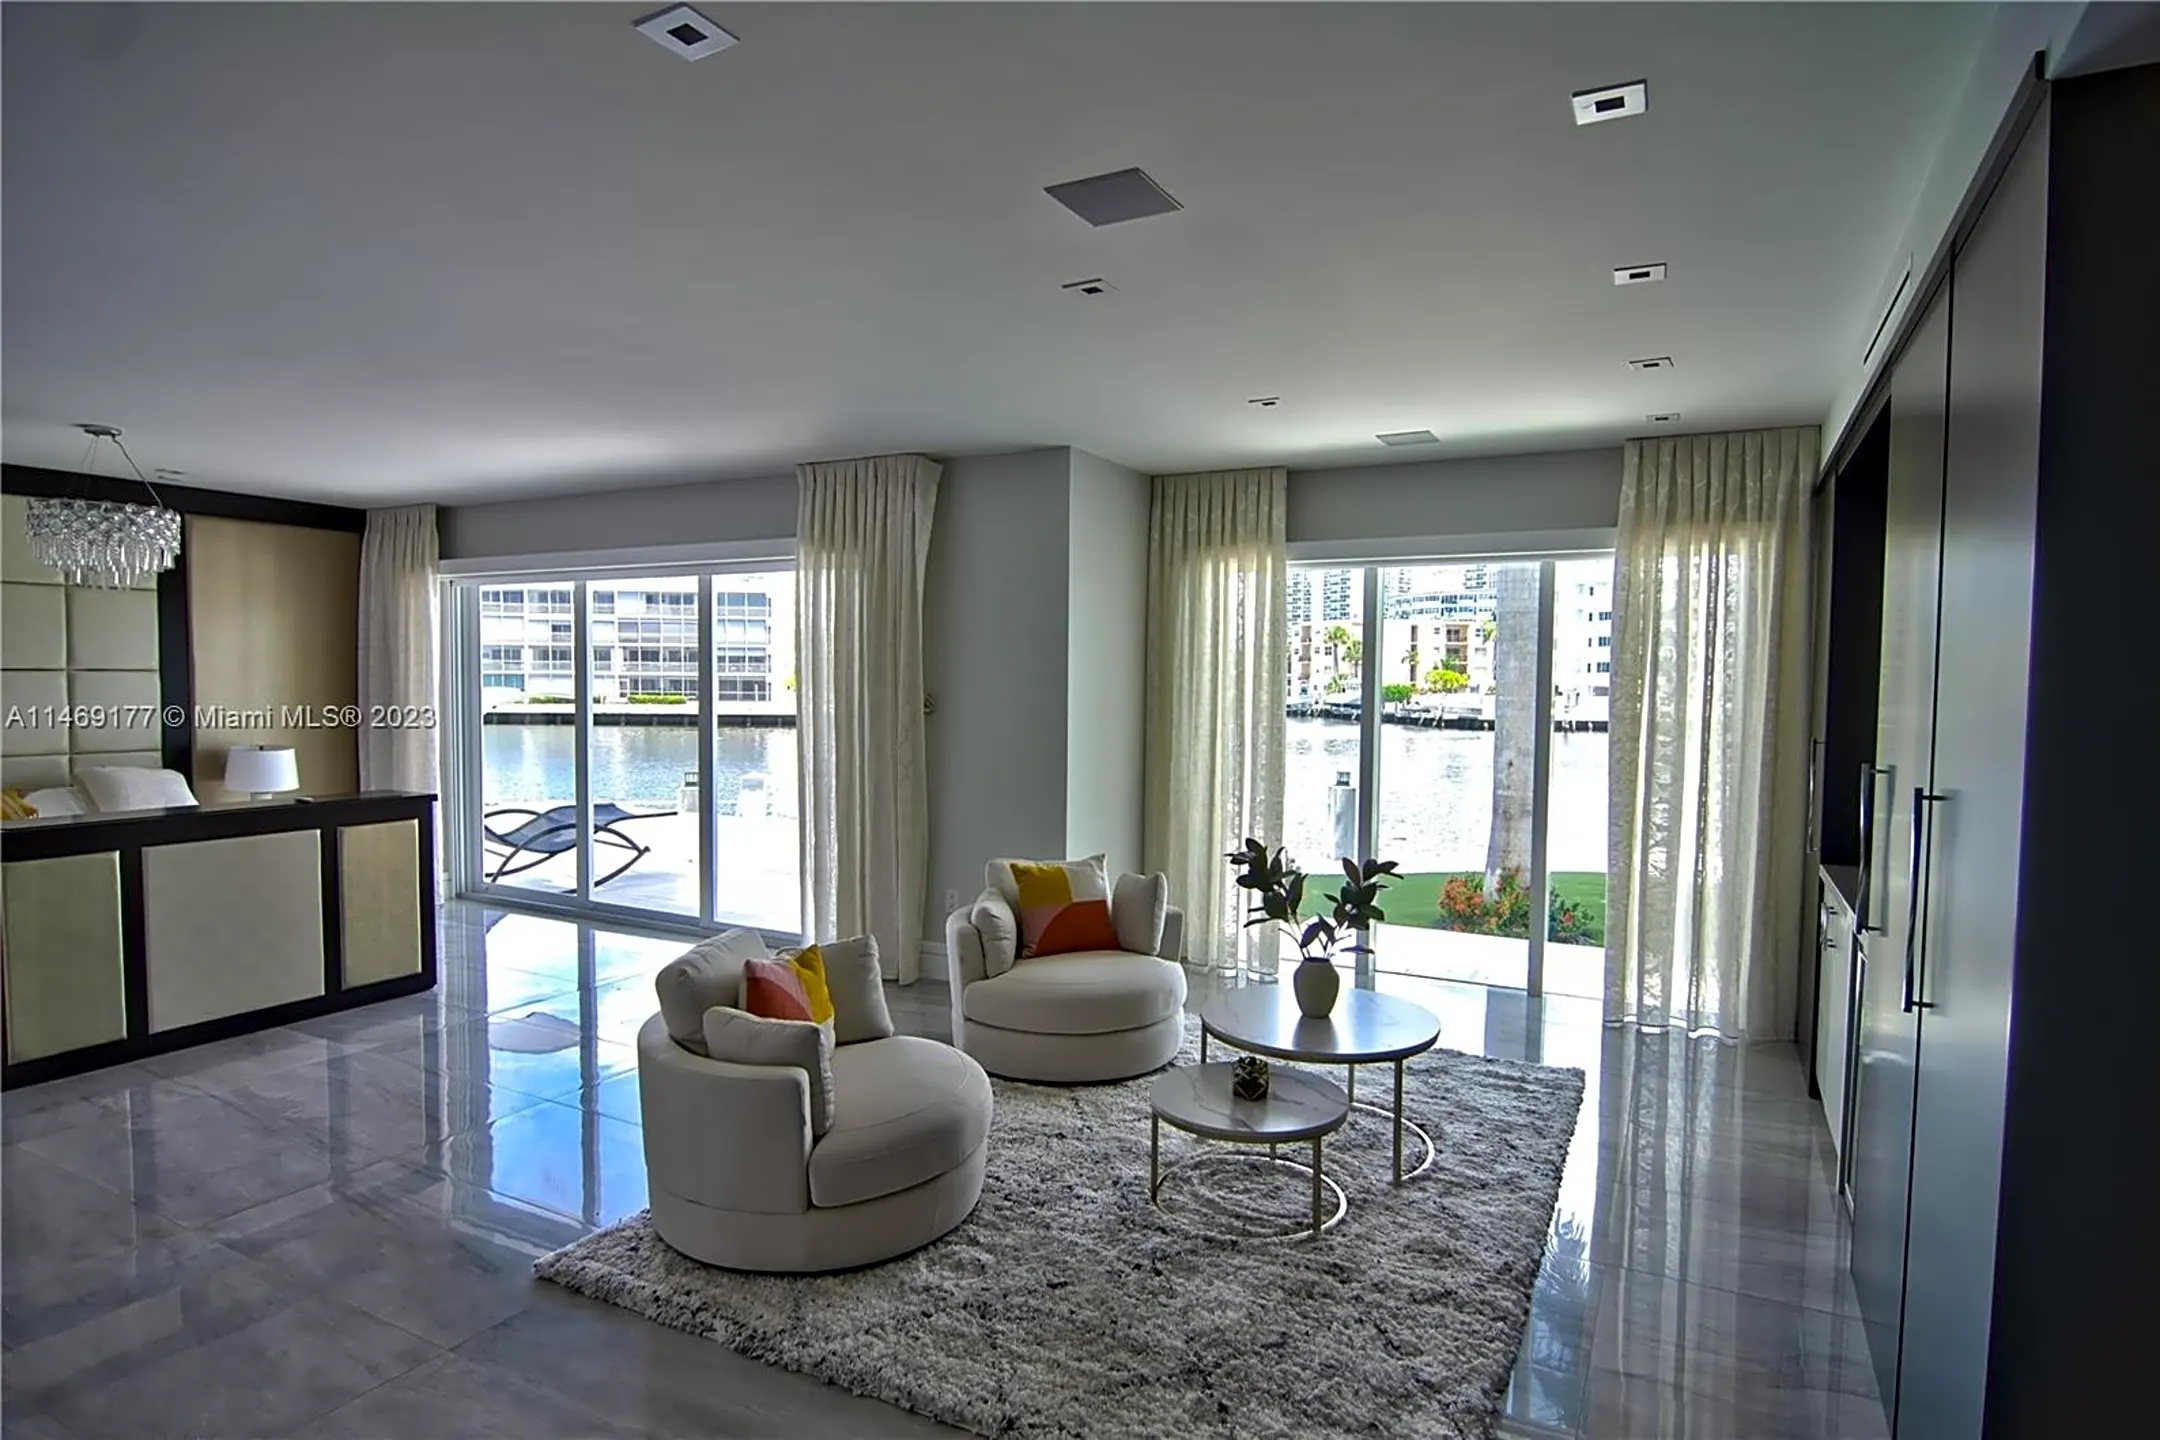 Living Room - 2890 NE 28th St - Fort Lauderdale, FL